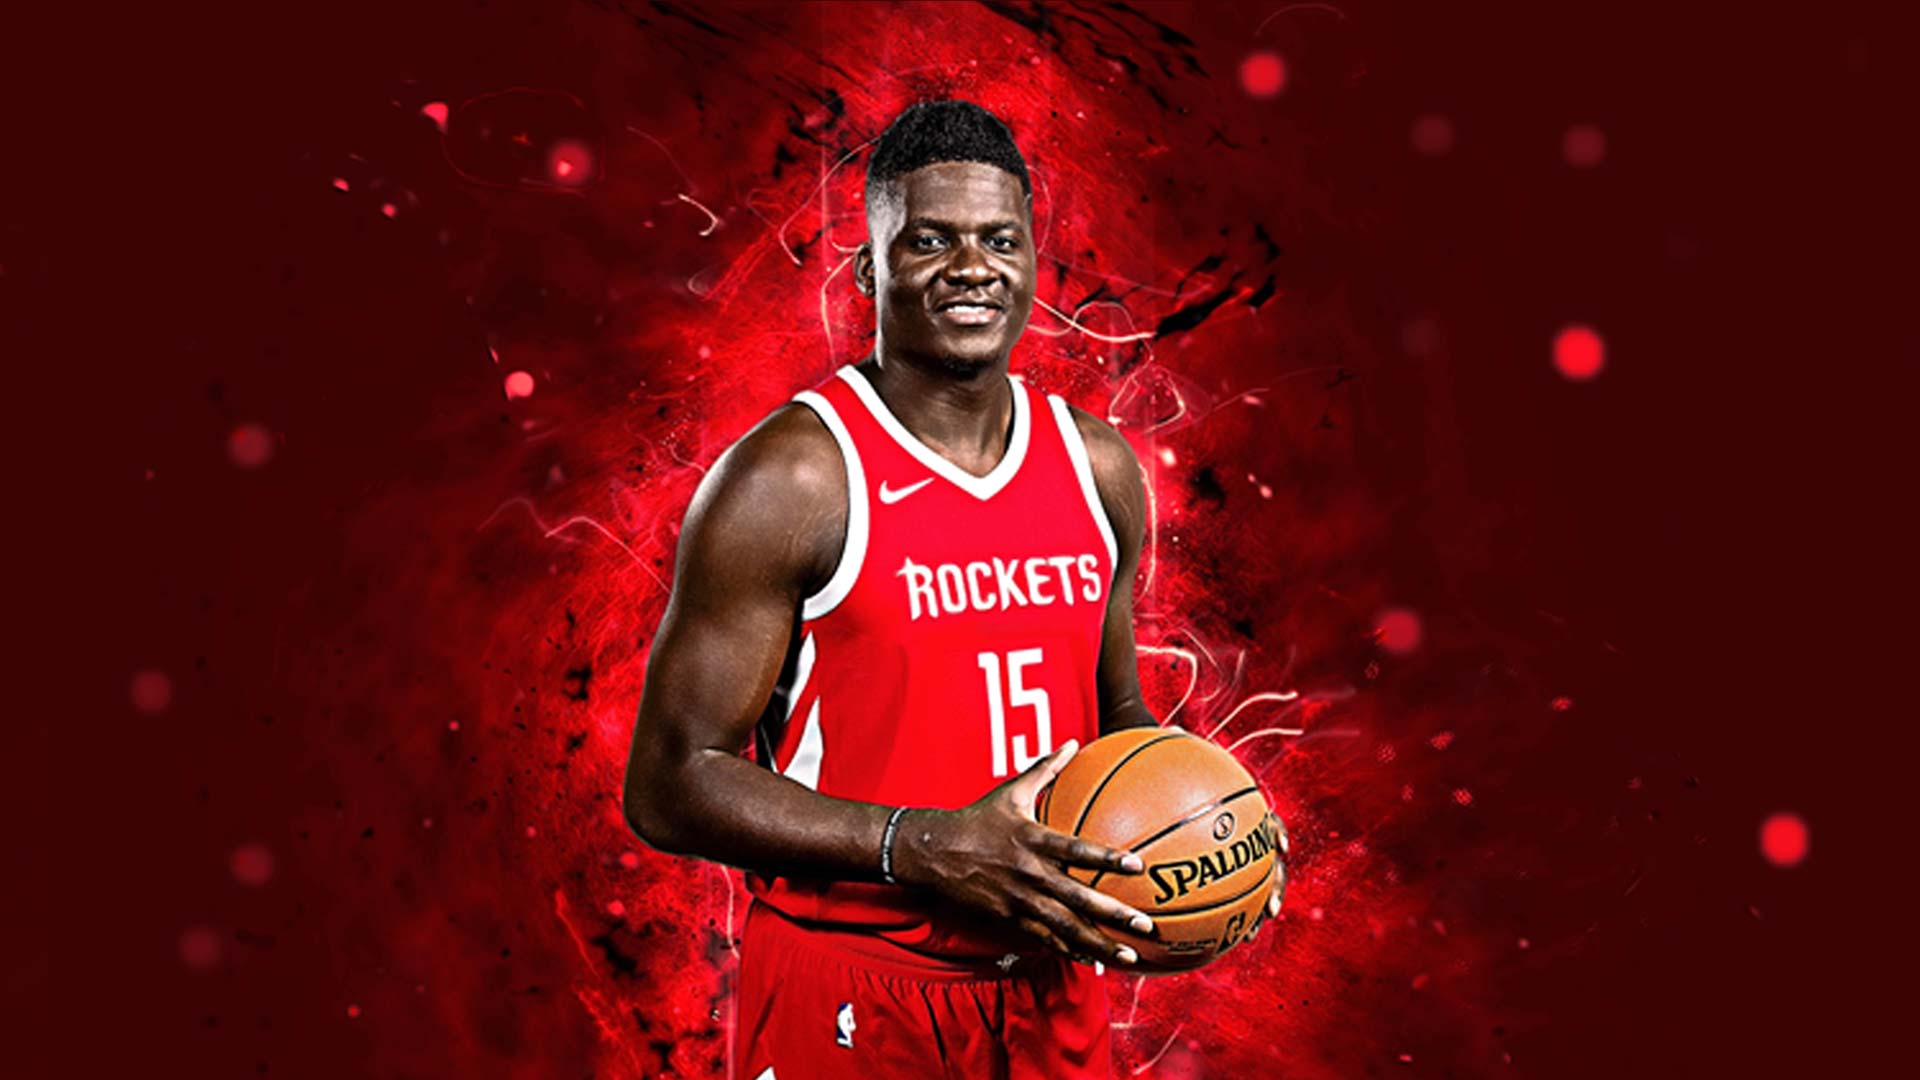 Pour Noël, Baskethouse en collaboration avec Clint Capela et Nike met en vente le maillot de Clint Capela Houston rouge NBA.